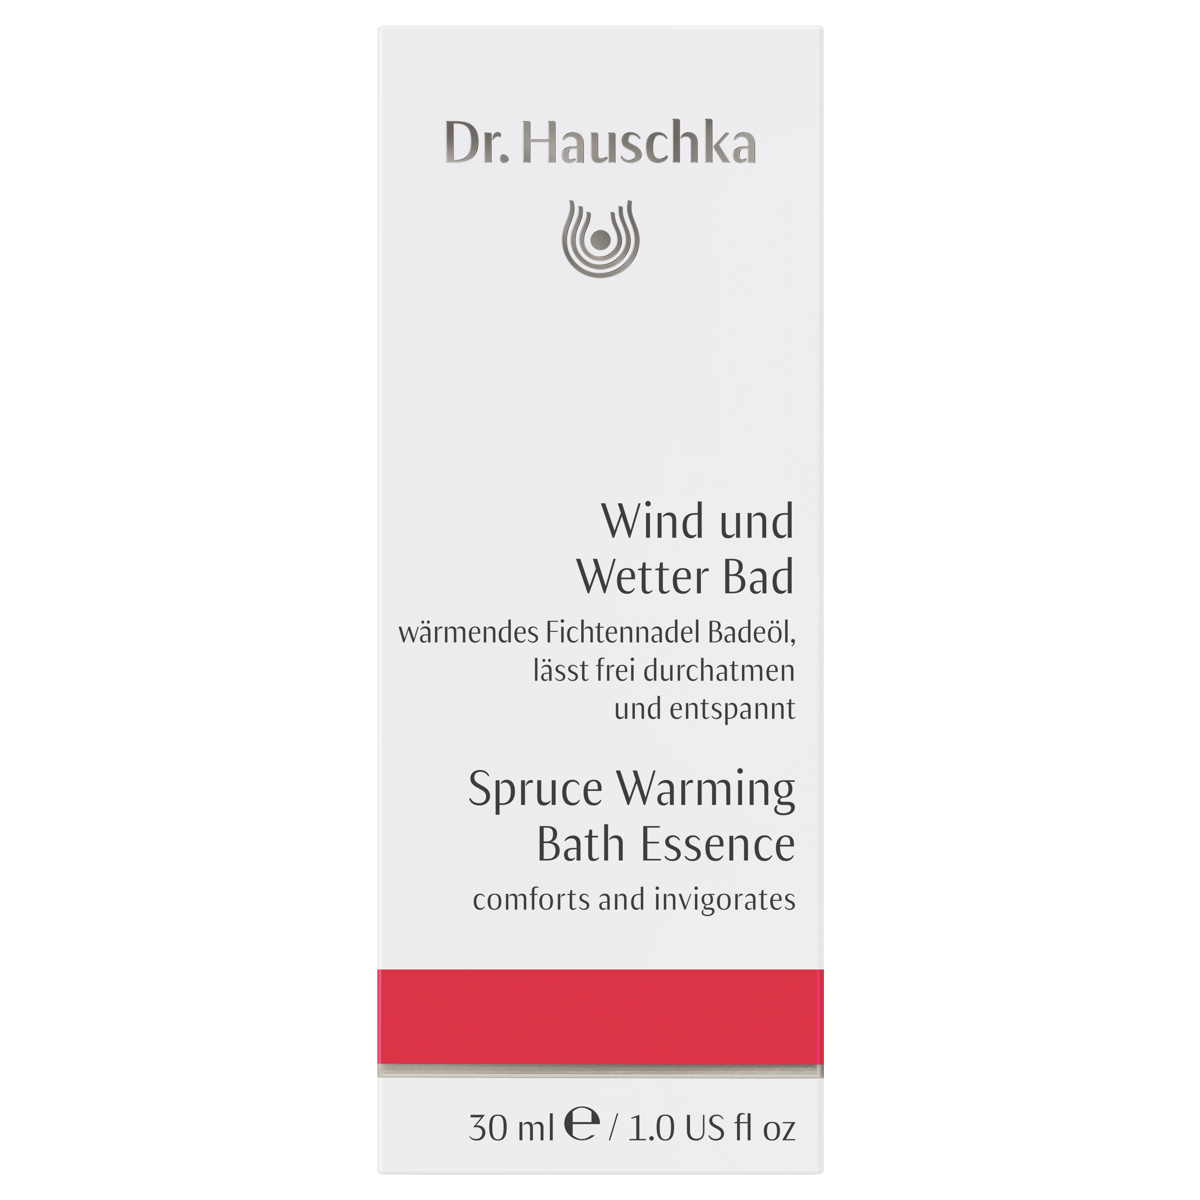 Dr Hauschka Wind und Wetter Bad Verpackung